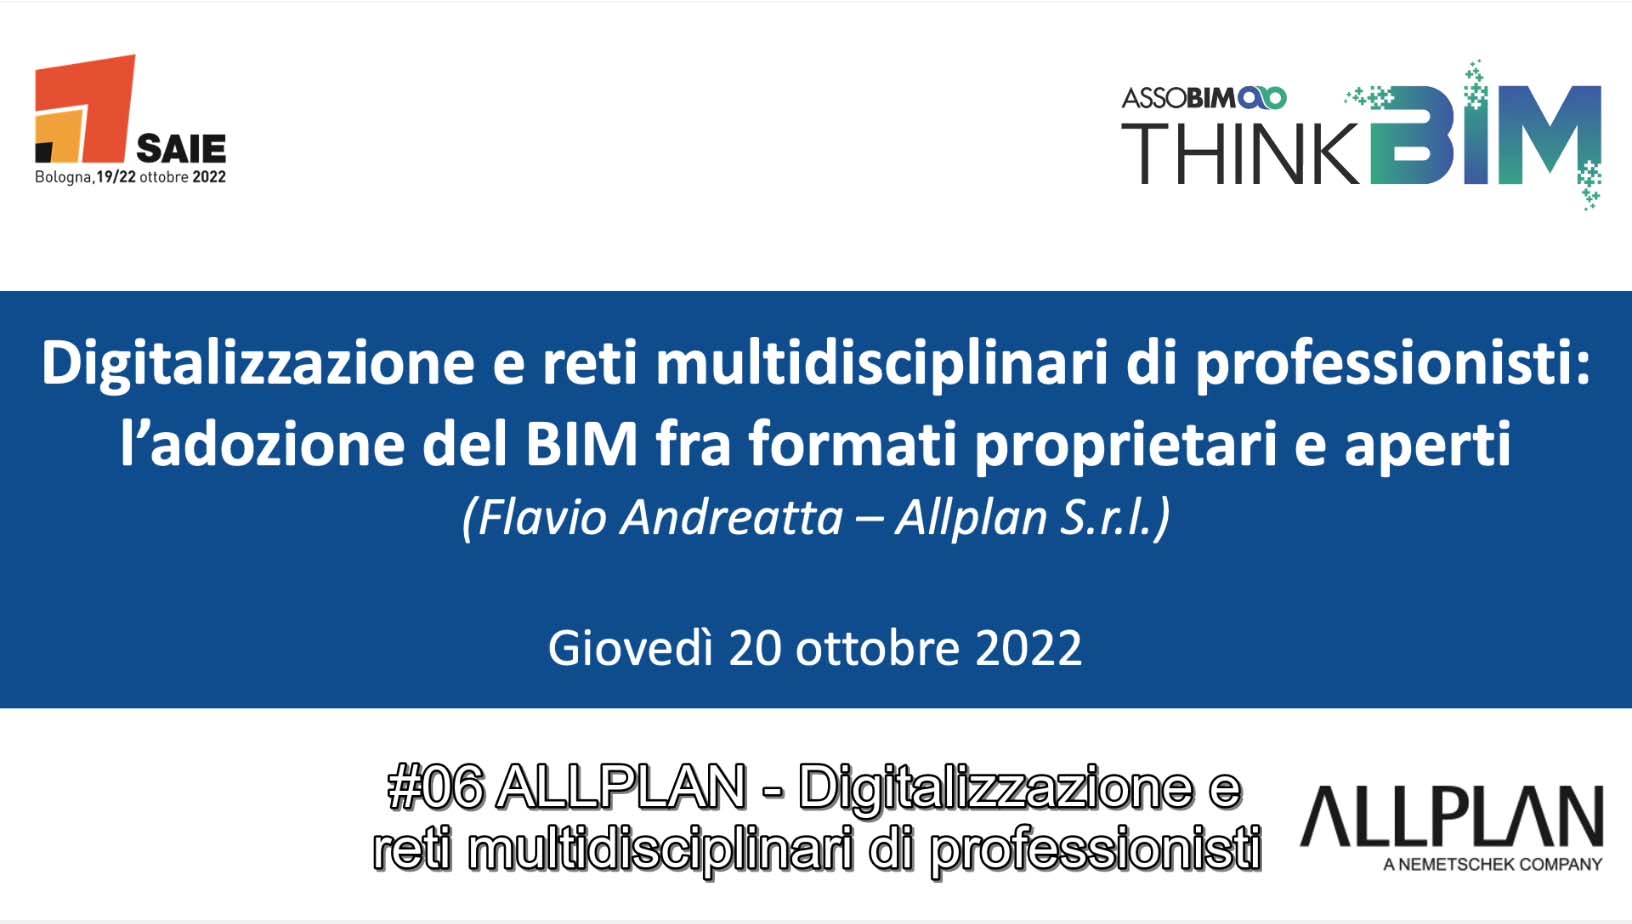 SAIE 2022 – Digitalizzazione e reti multidisciplinari di professionisti: l’adozione del BIM fra formati proprietari e aperti